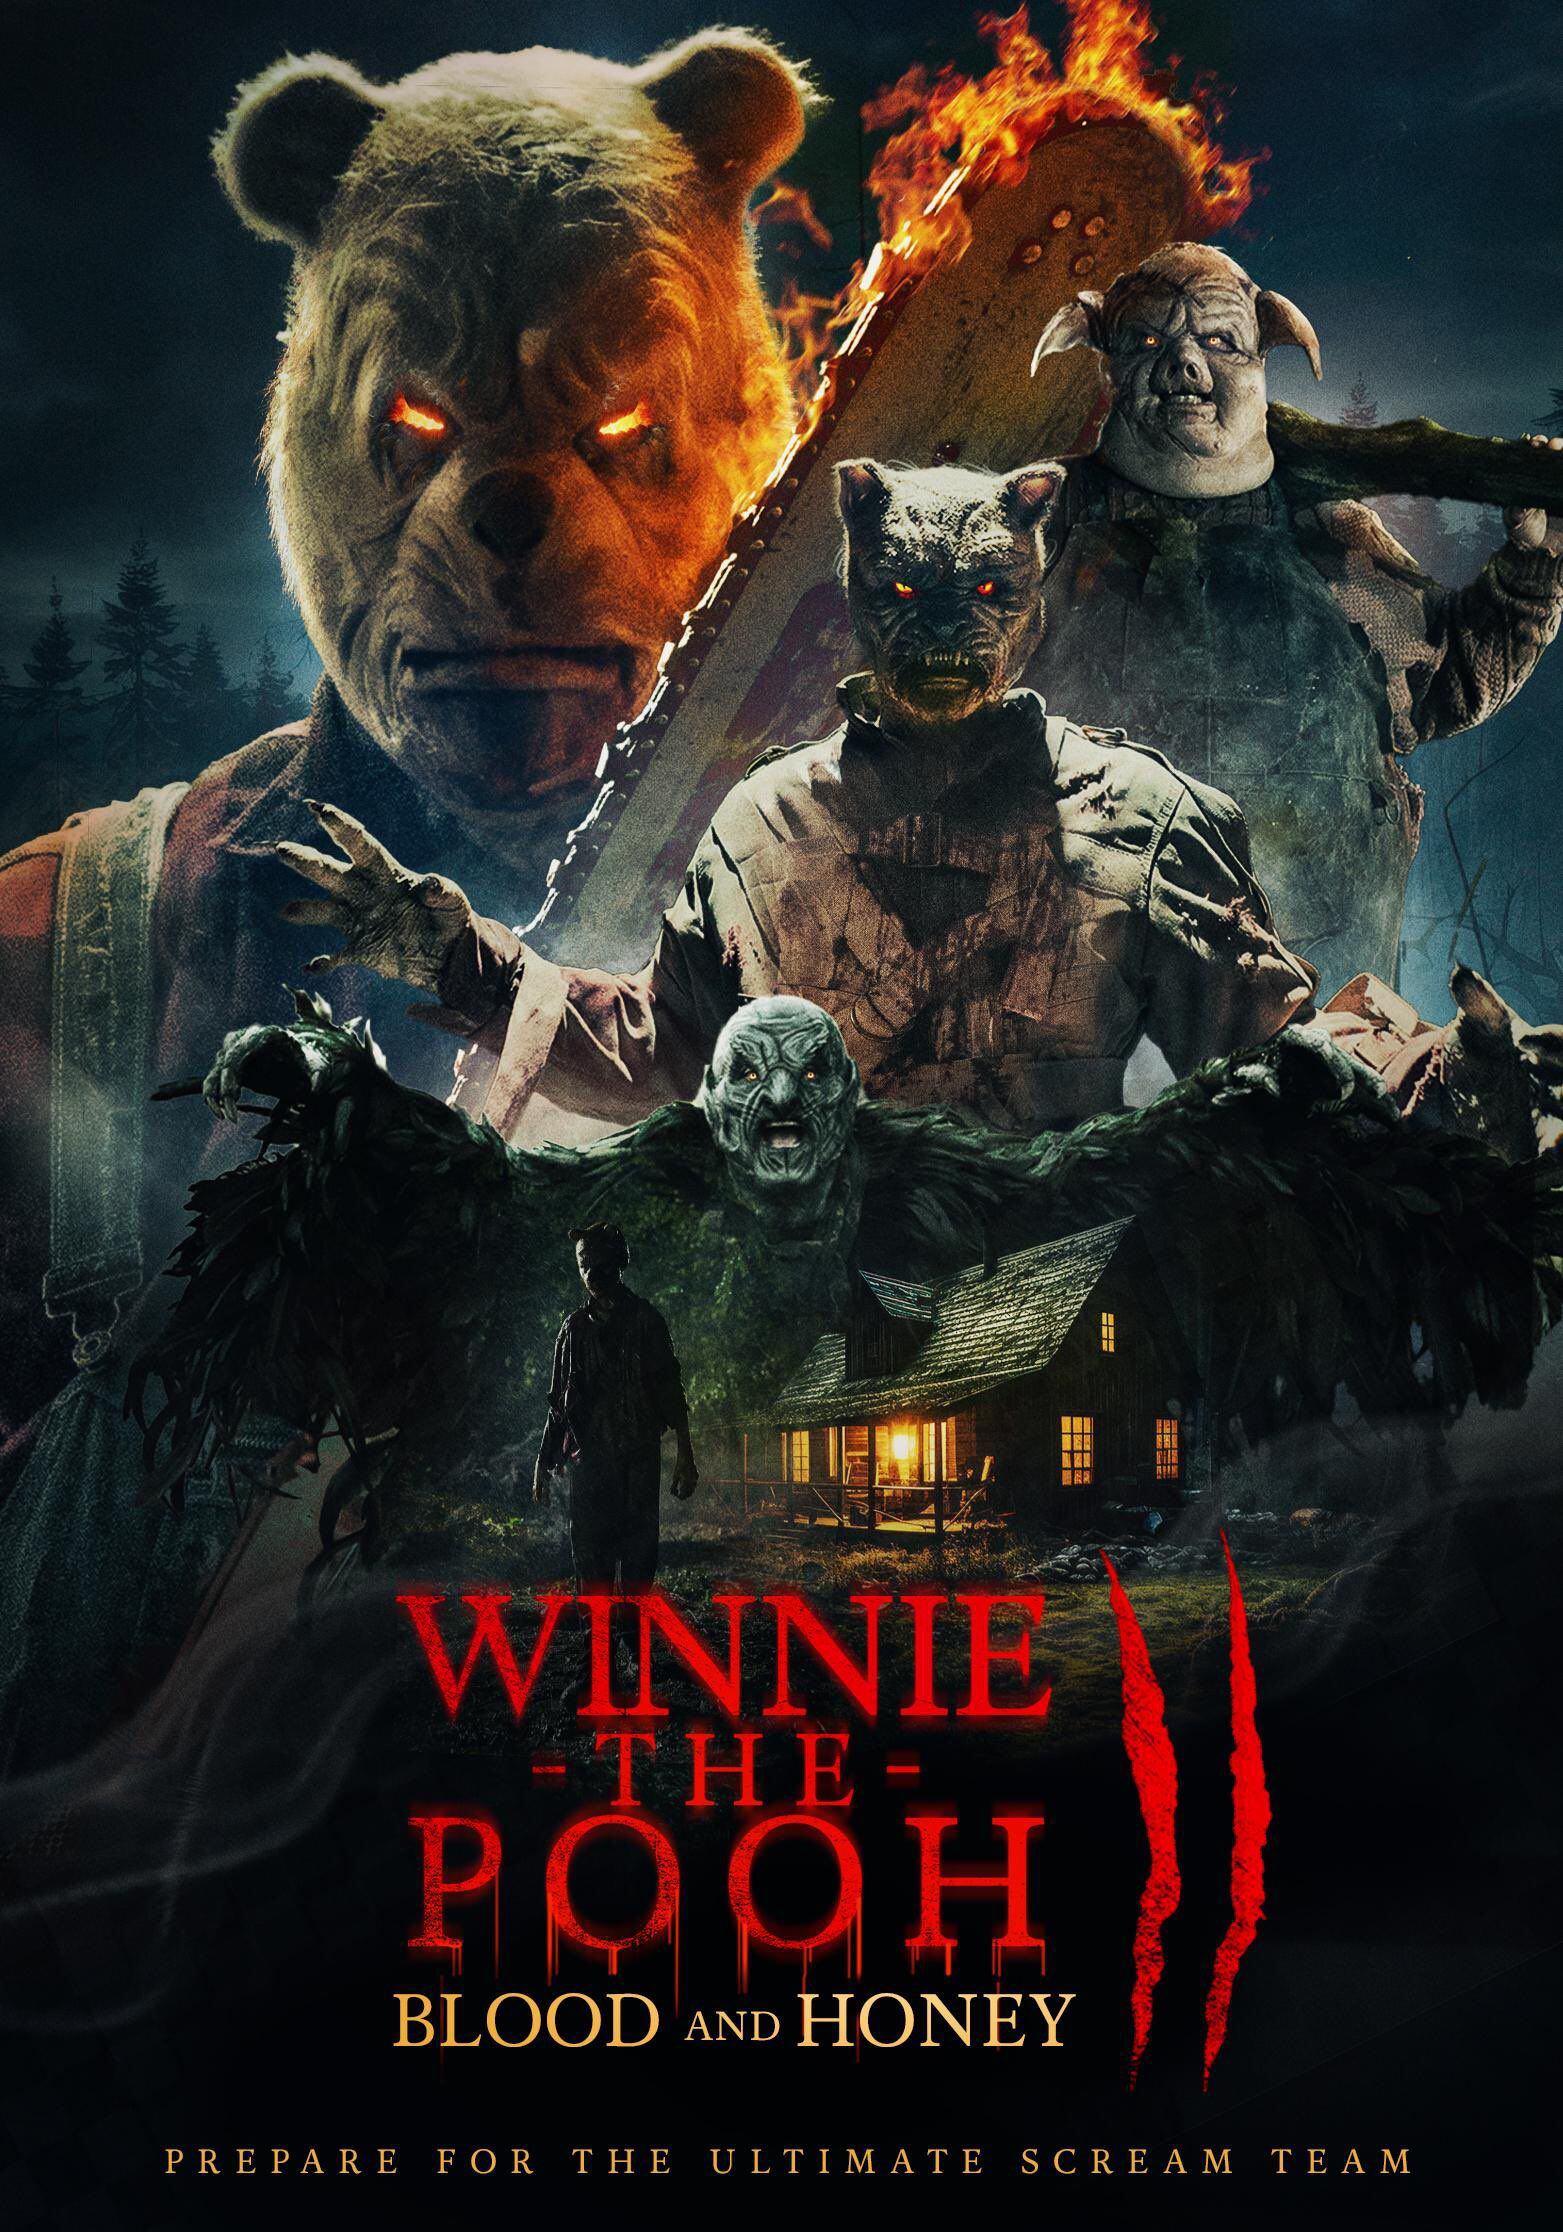 Winnie the Pooh: Miel y sangre 2 ya tiene calificación en Rotten Tomatoes